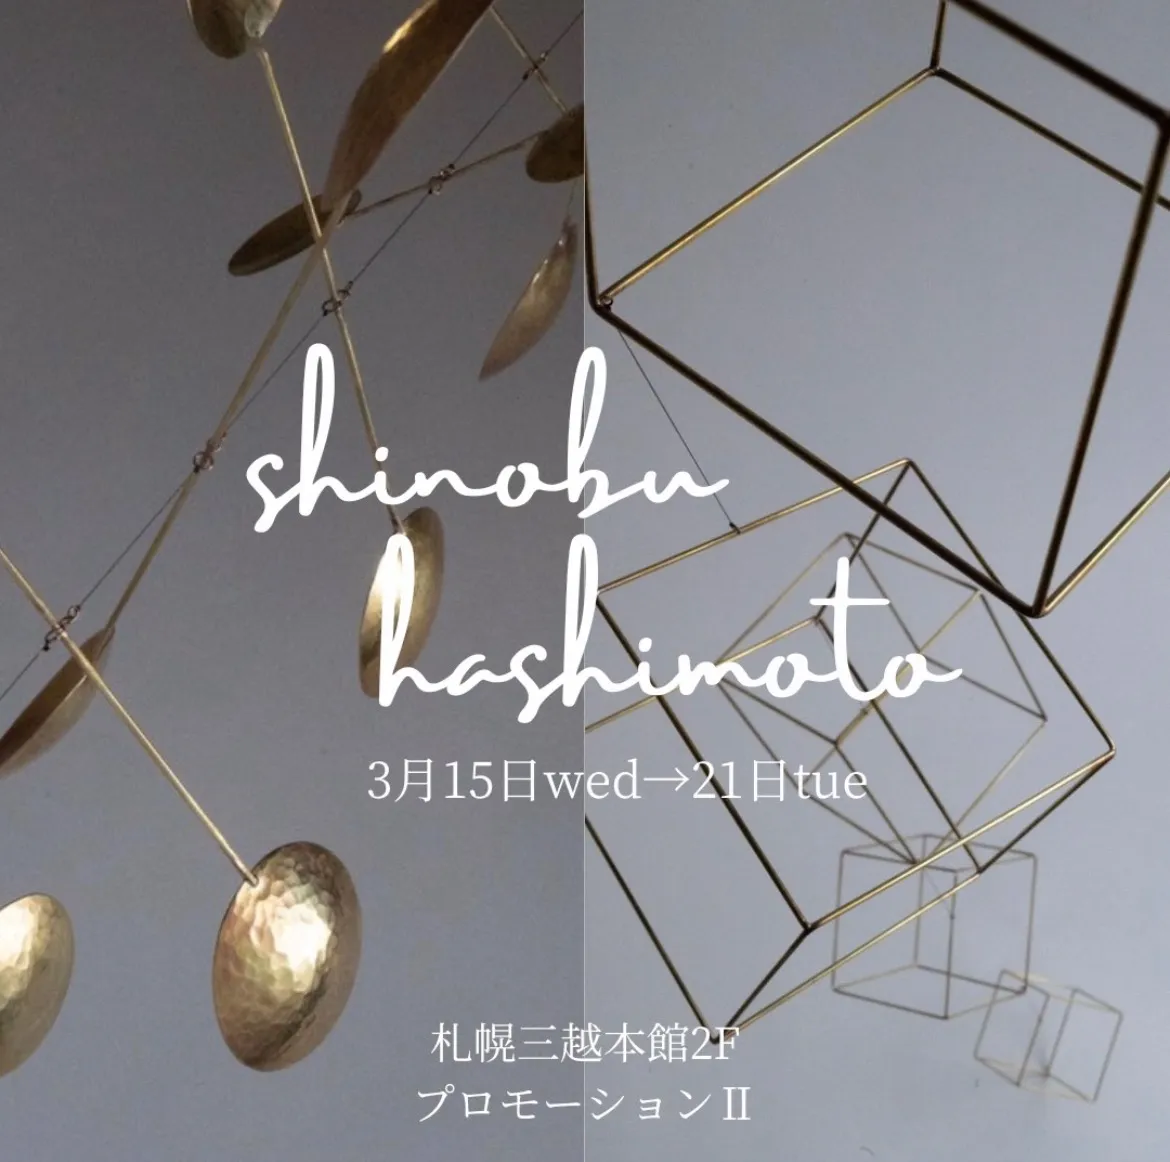 【イベント】shinobu hashimoto